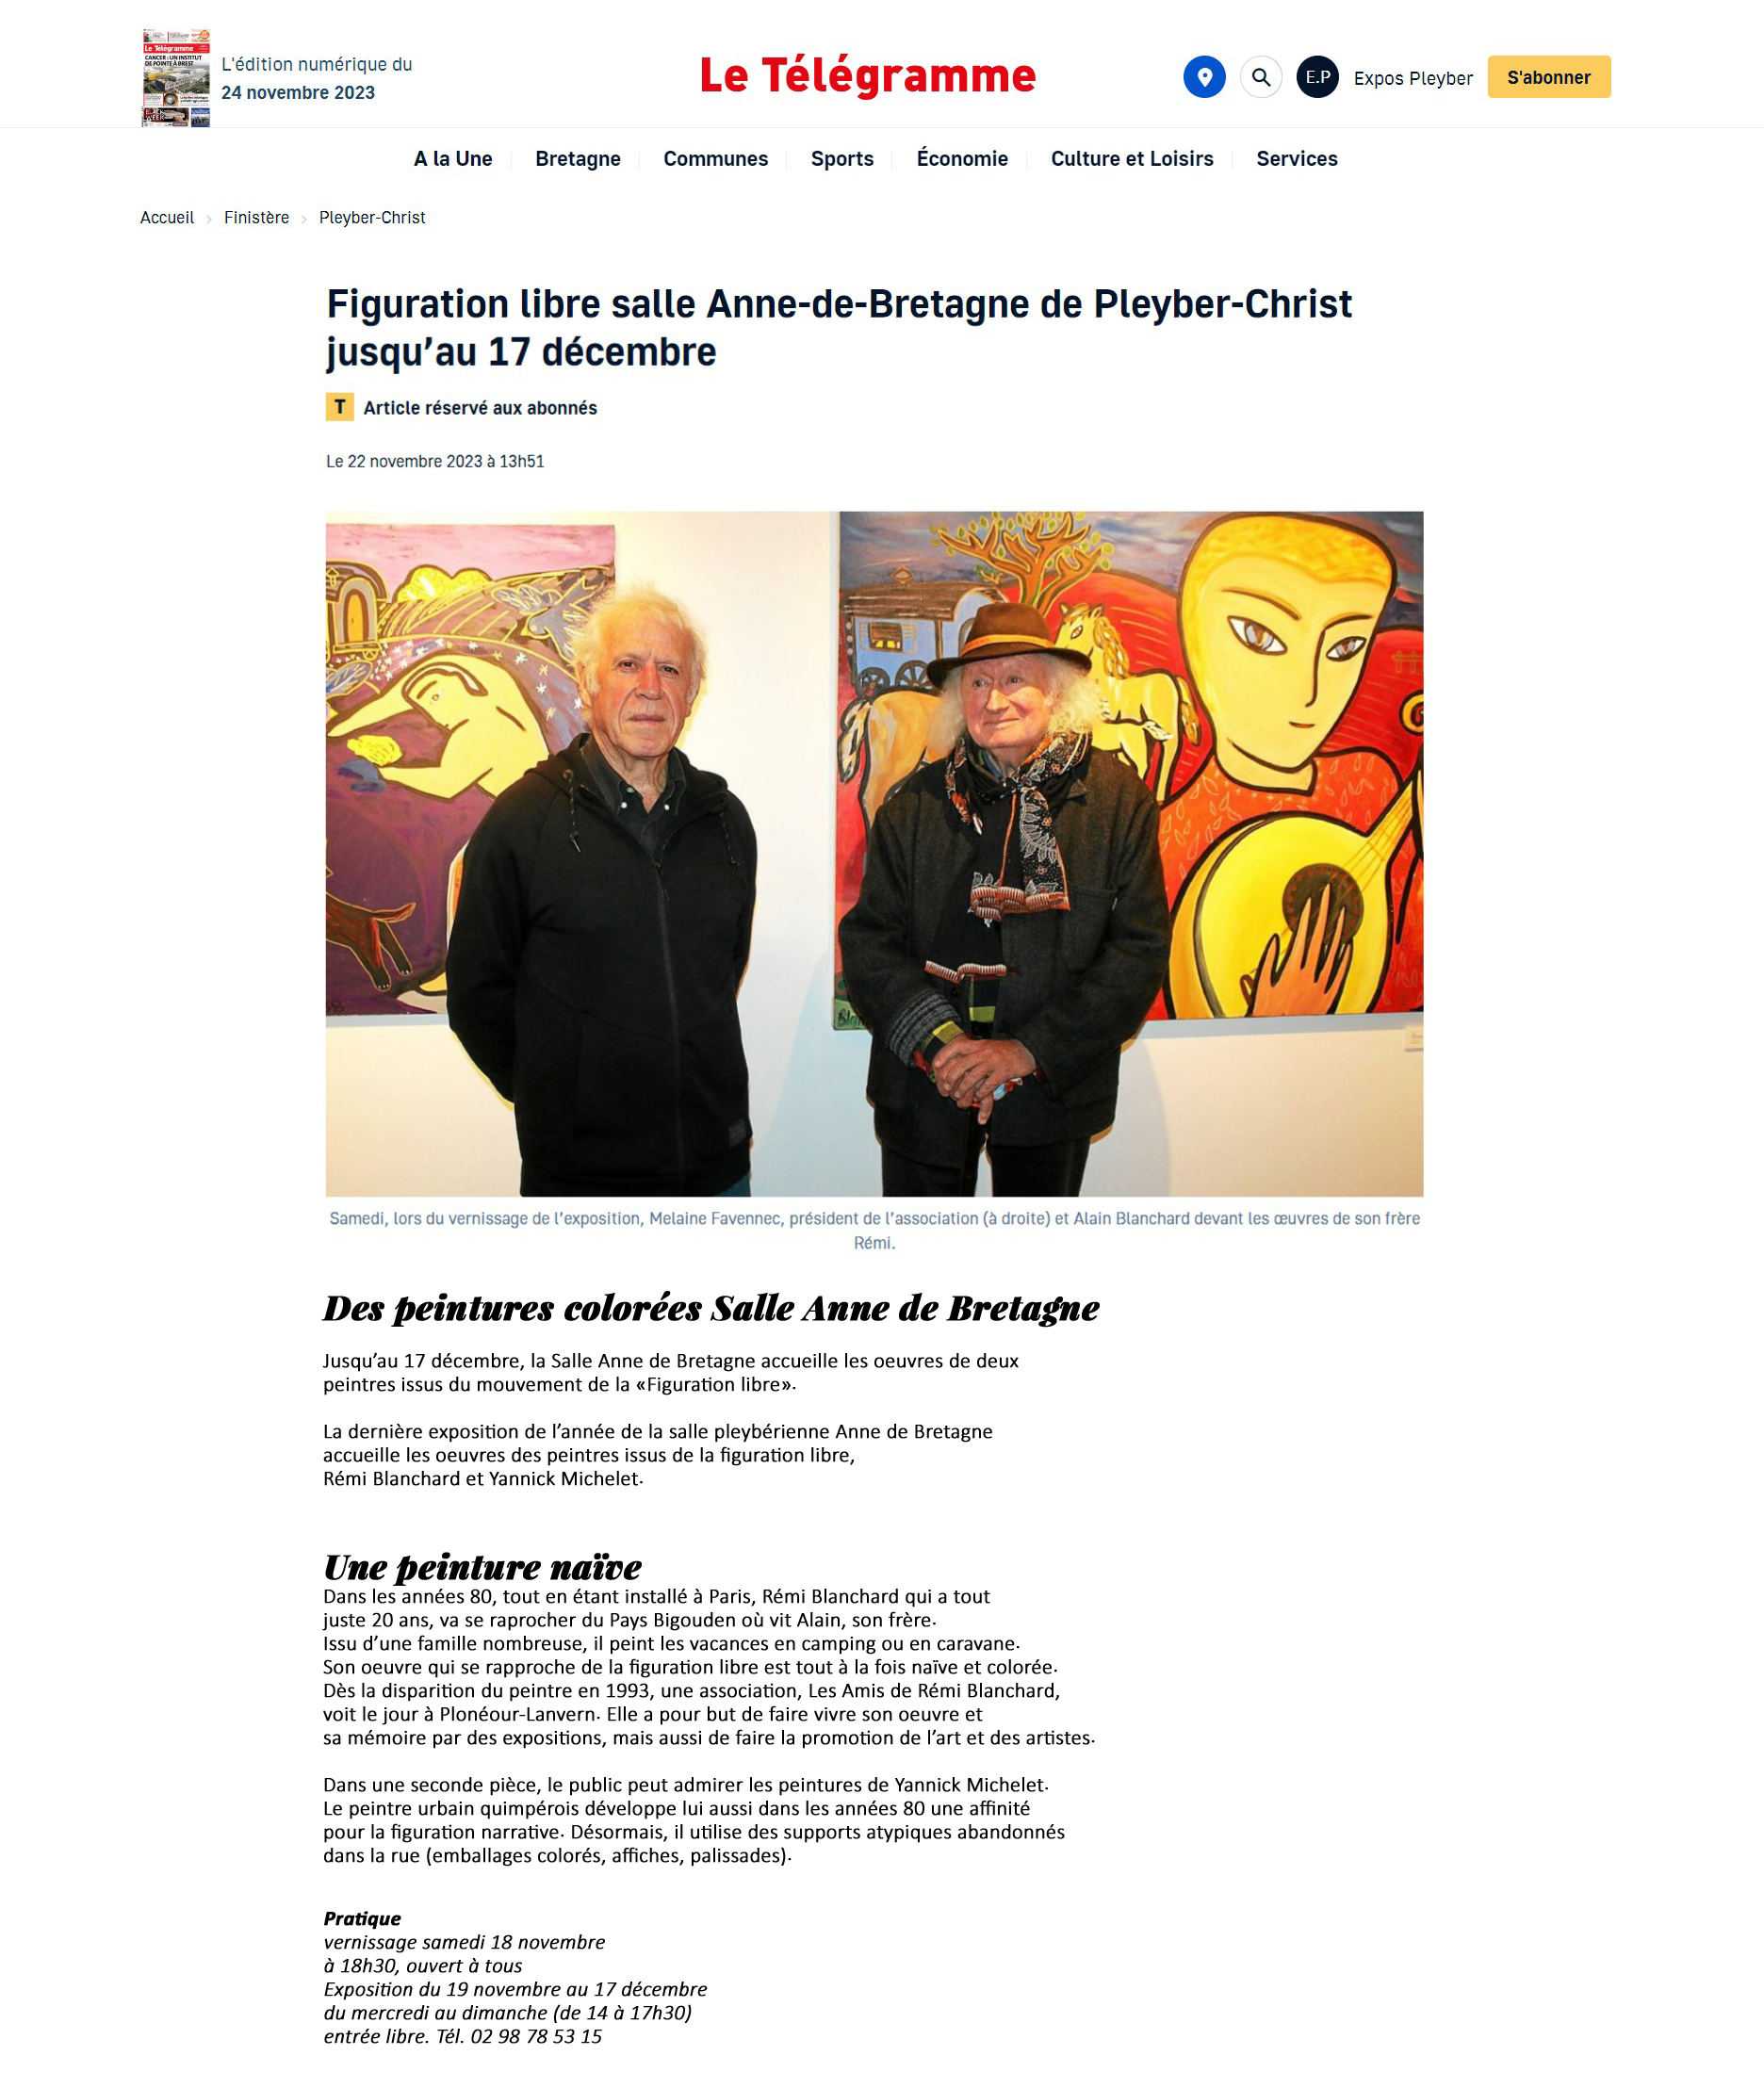 Le Télégramme du 22 novembre 2023 - exposition de Rémi Blanchard et Yannick Michelet